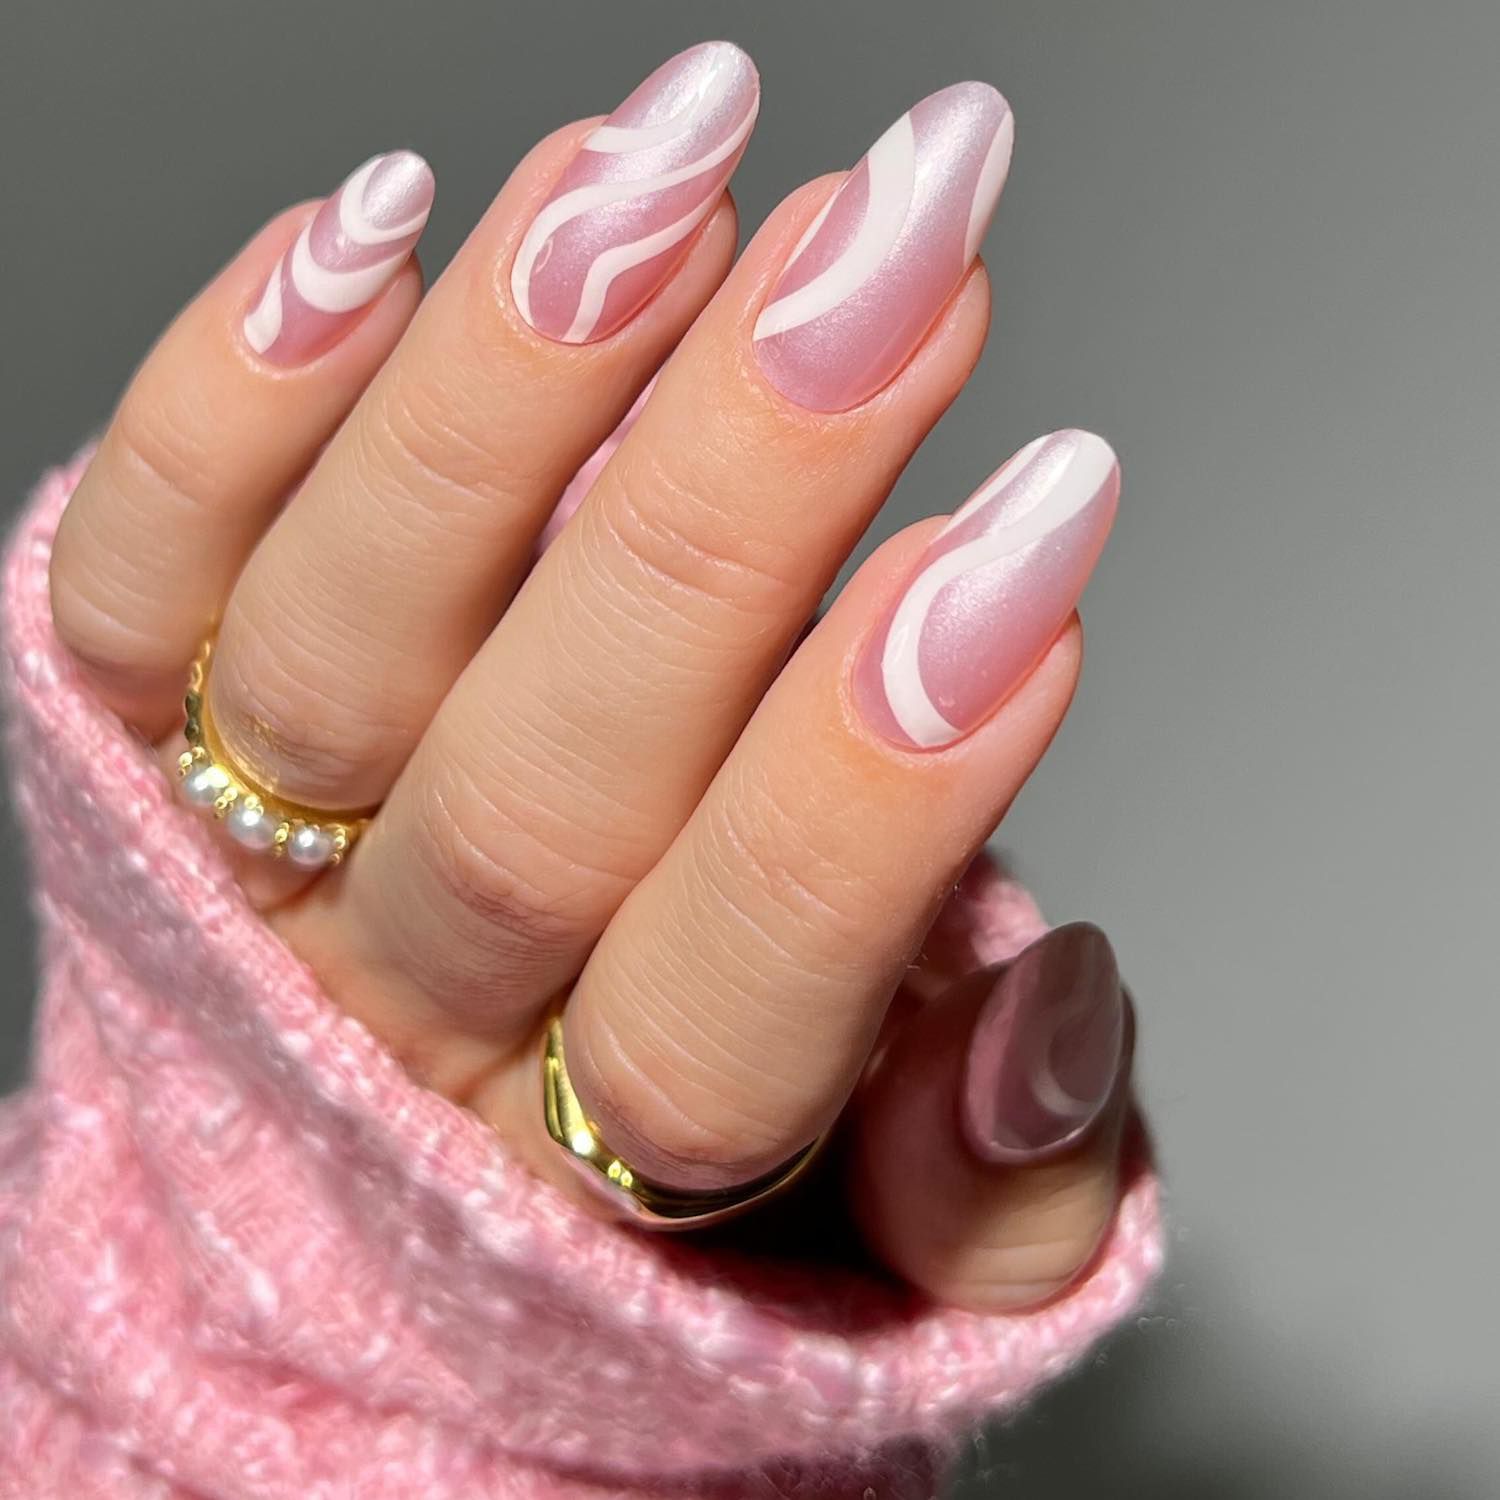 光芒四射的粉红色指甲与铬白色波浪设计